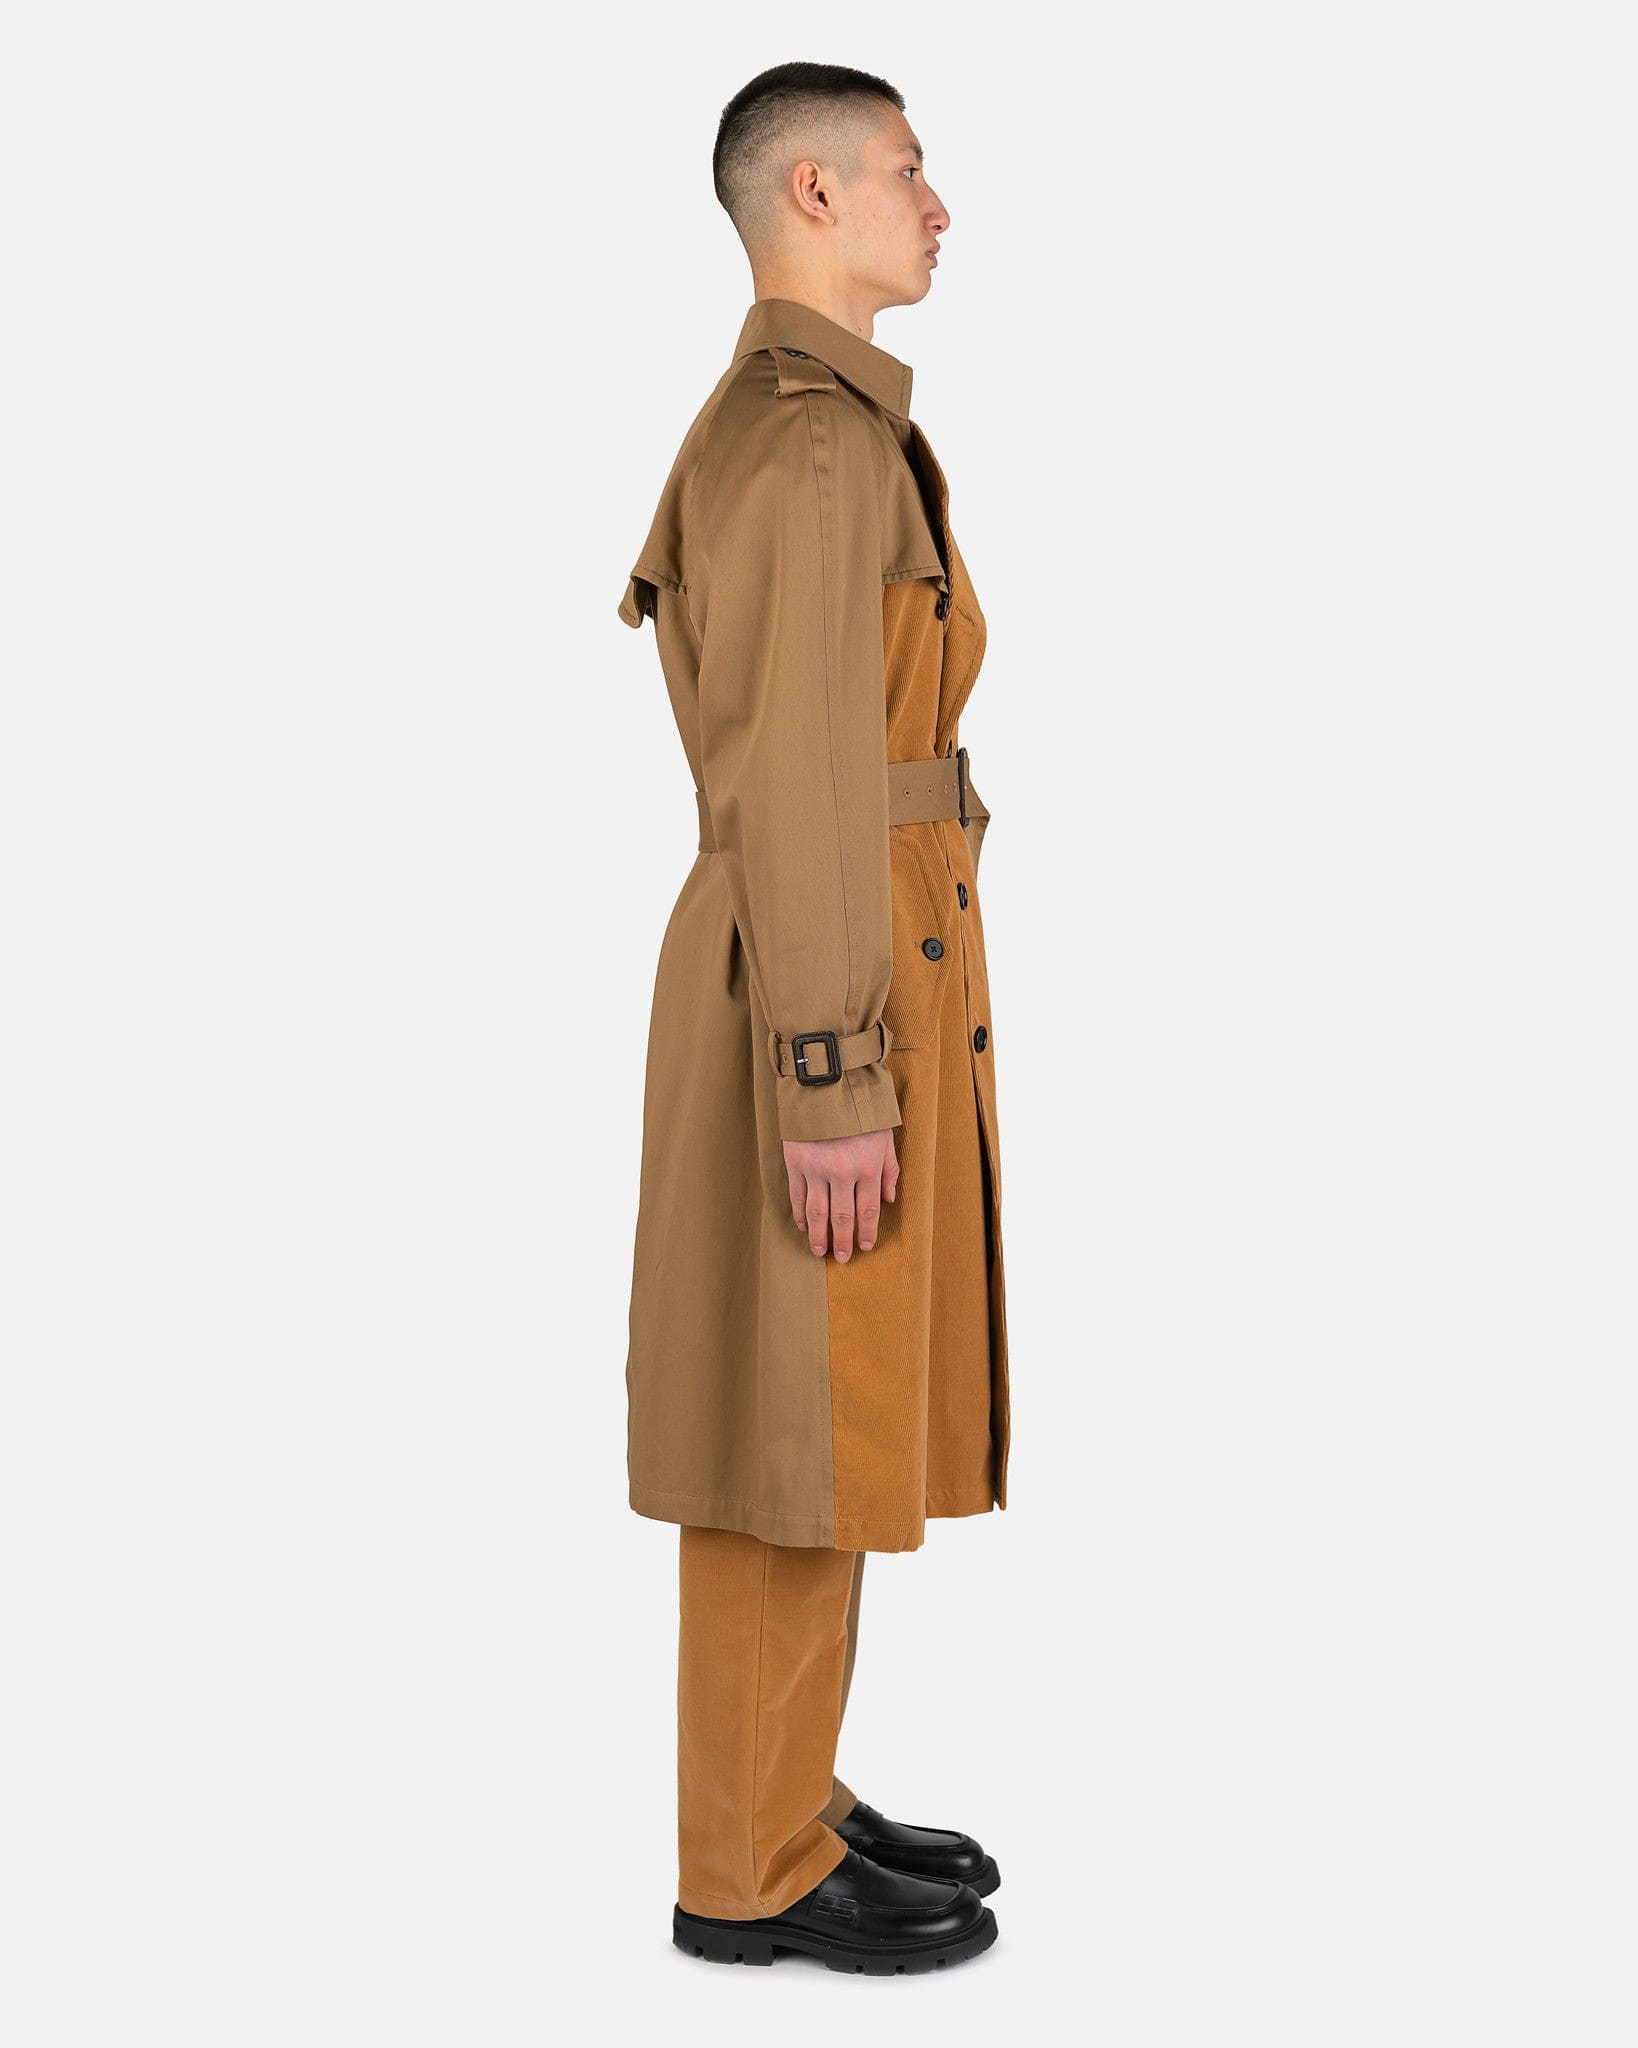 Marni Men's Coat Dustercoat in Hazelnut